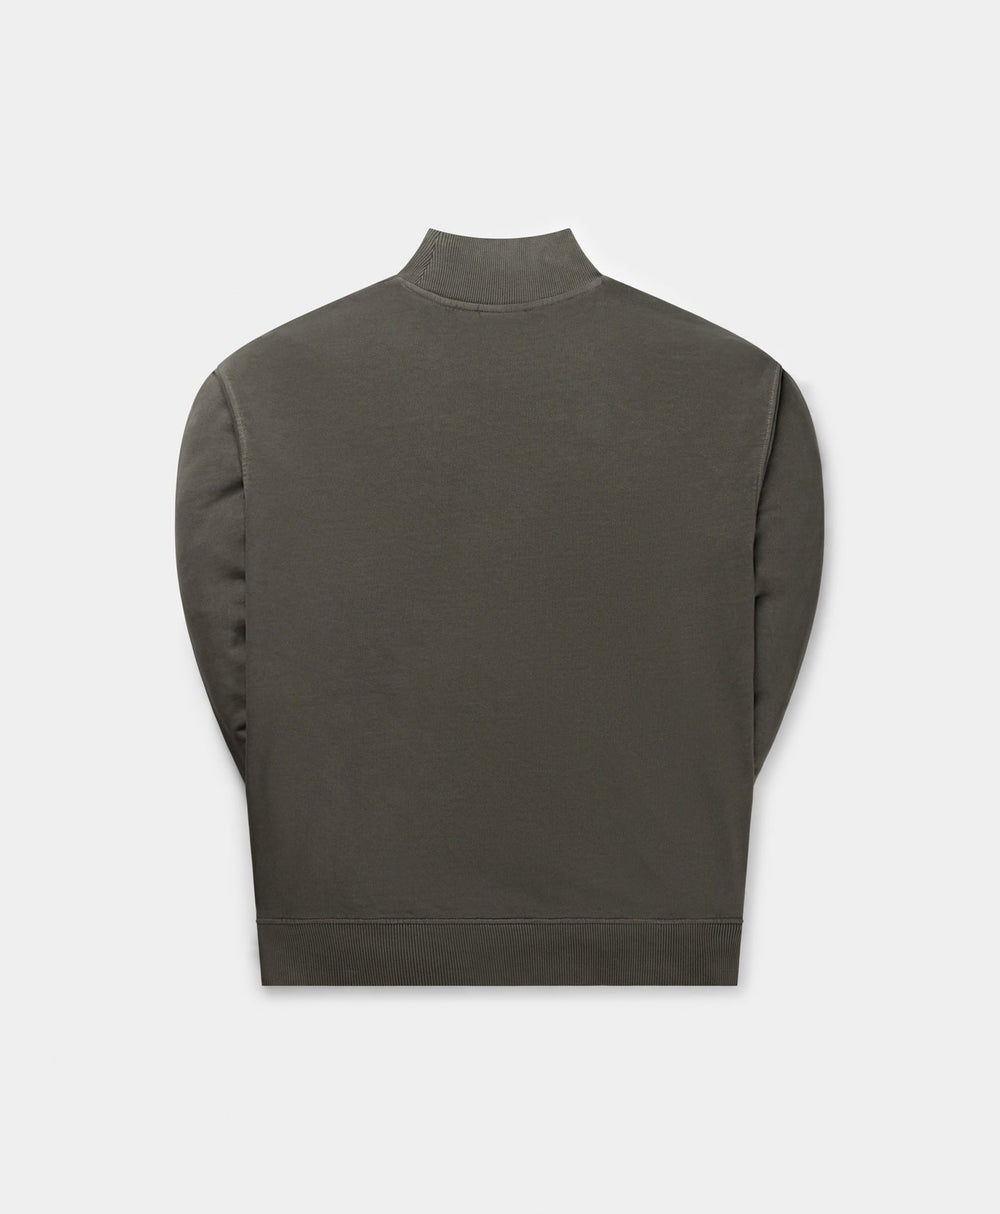 DP - Obsidian Black Buffering Oversized Sweater - Packshot - rear